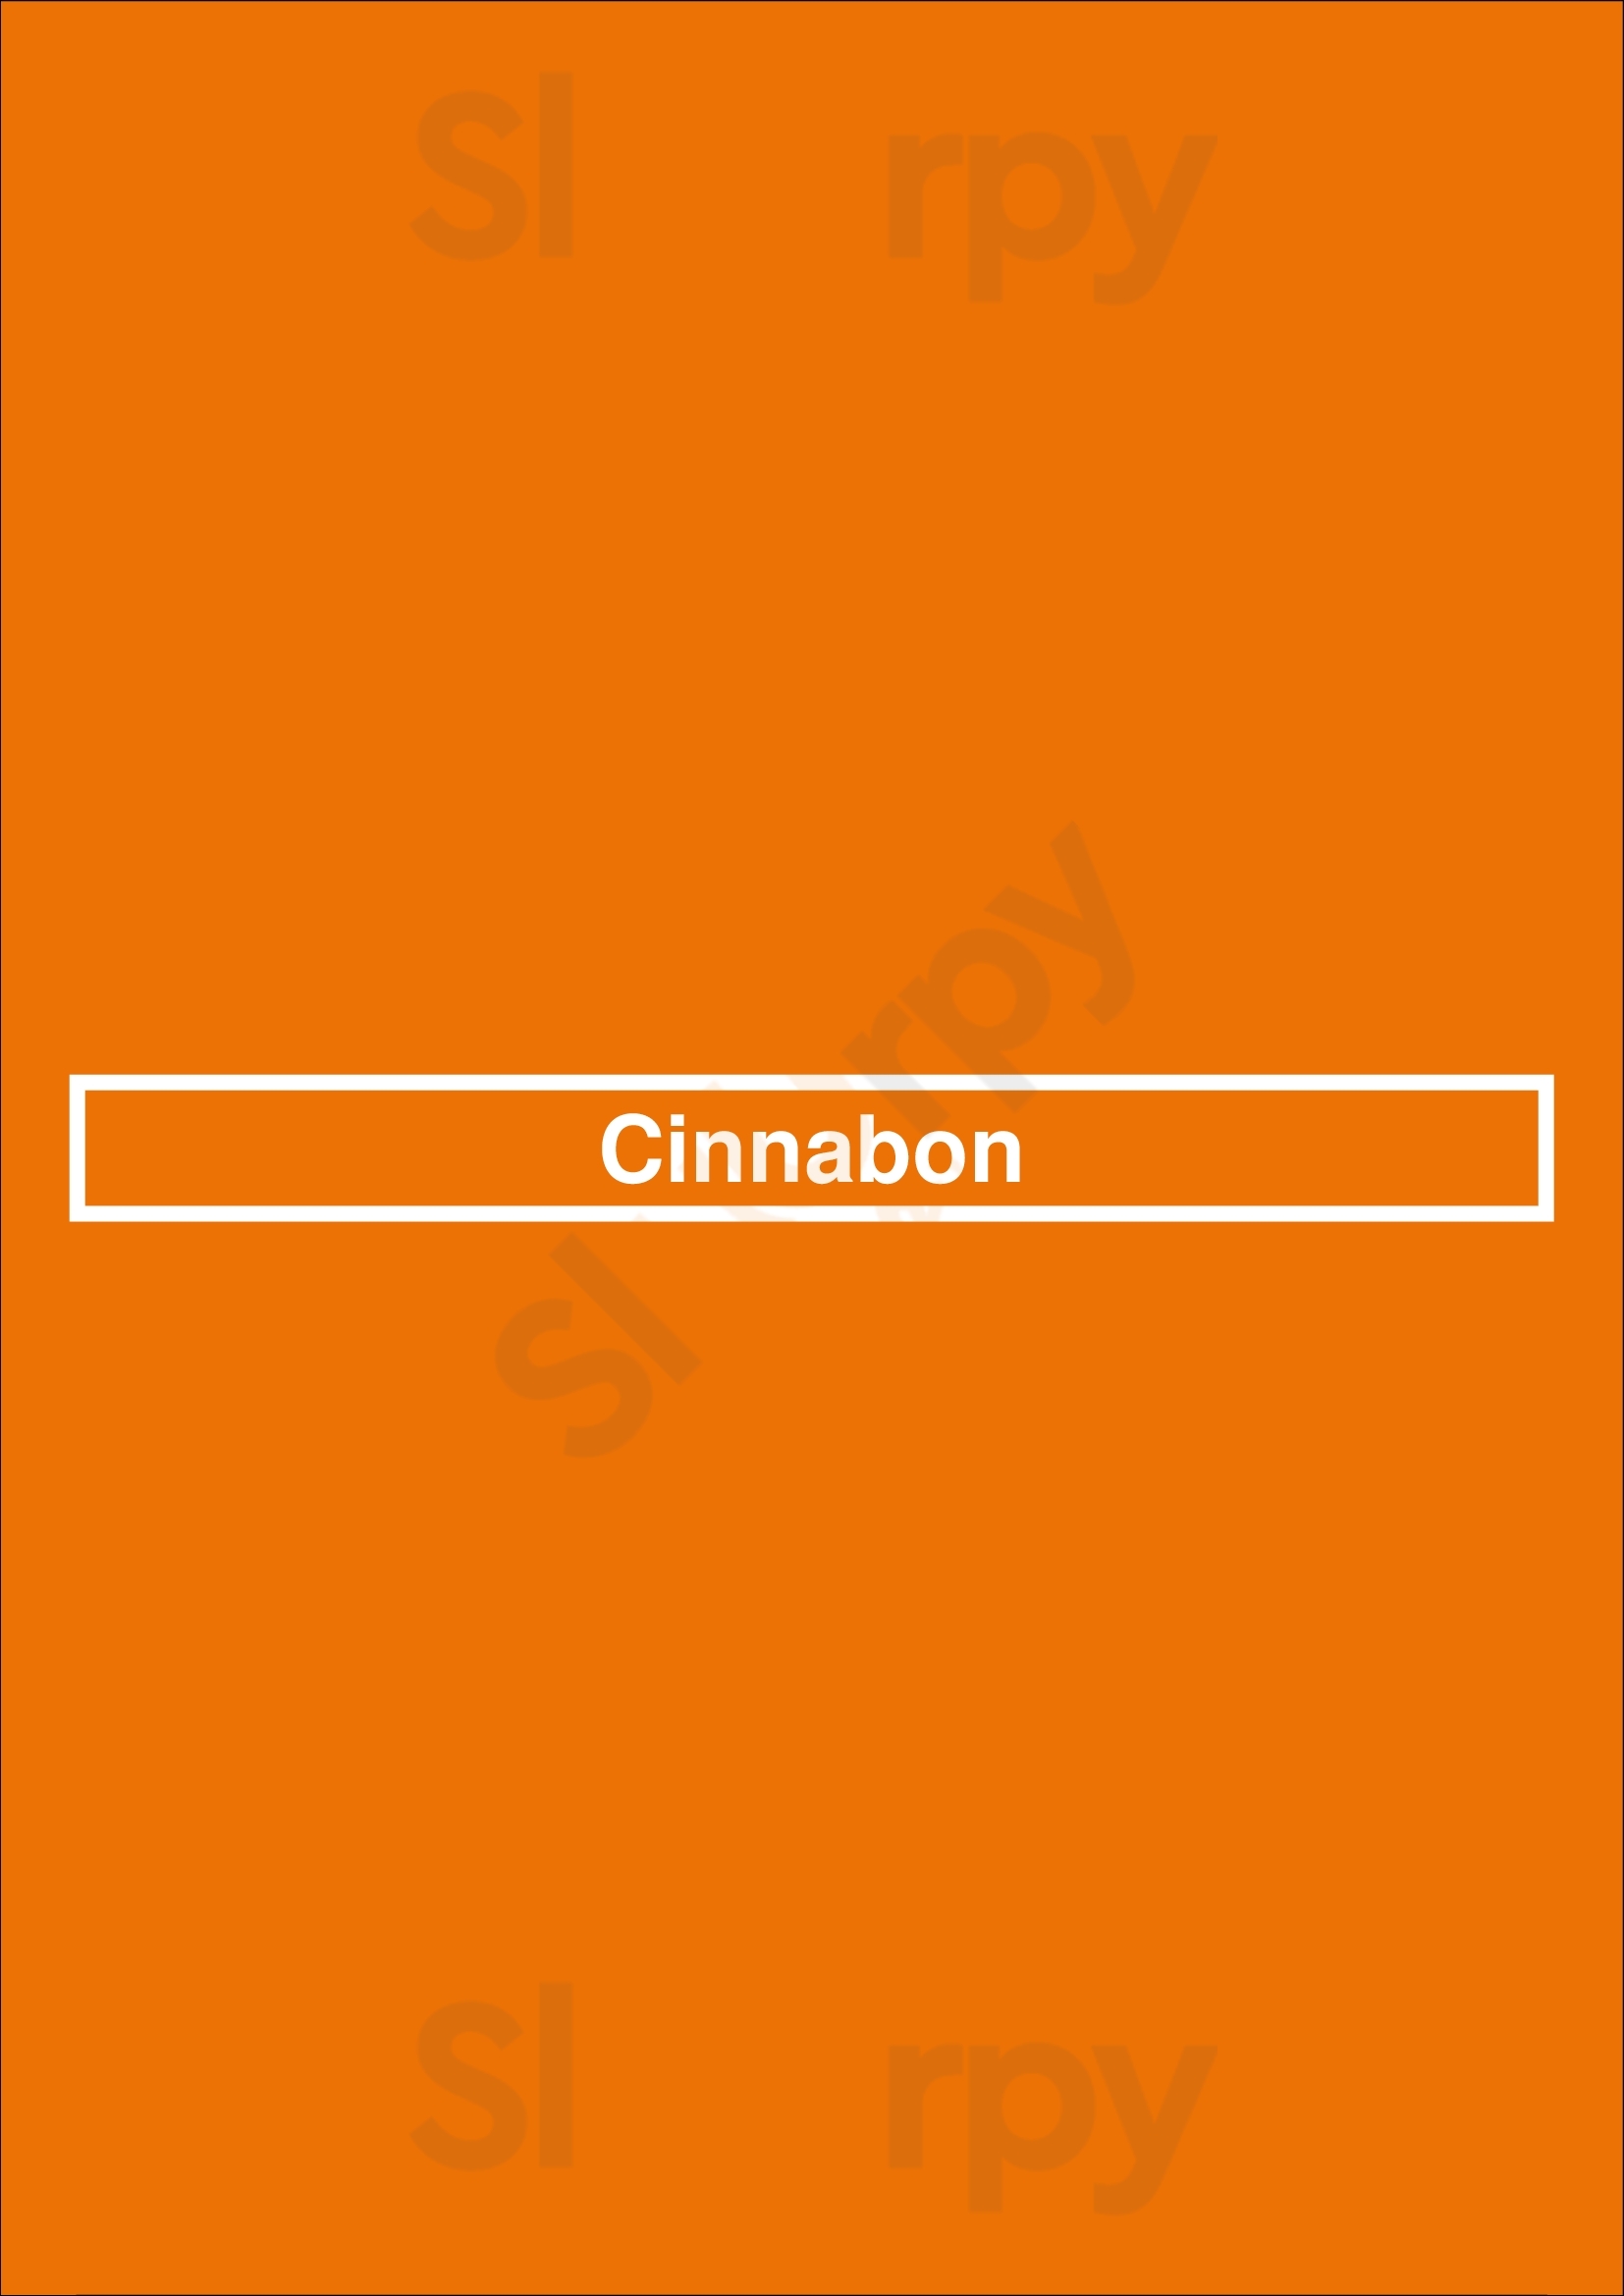 Cinnabon Los Angeles Menu - 1